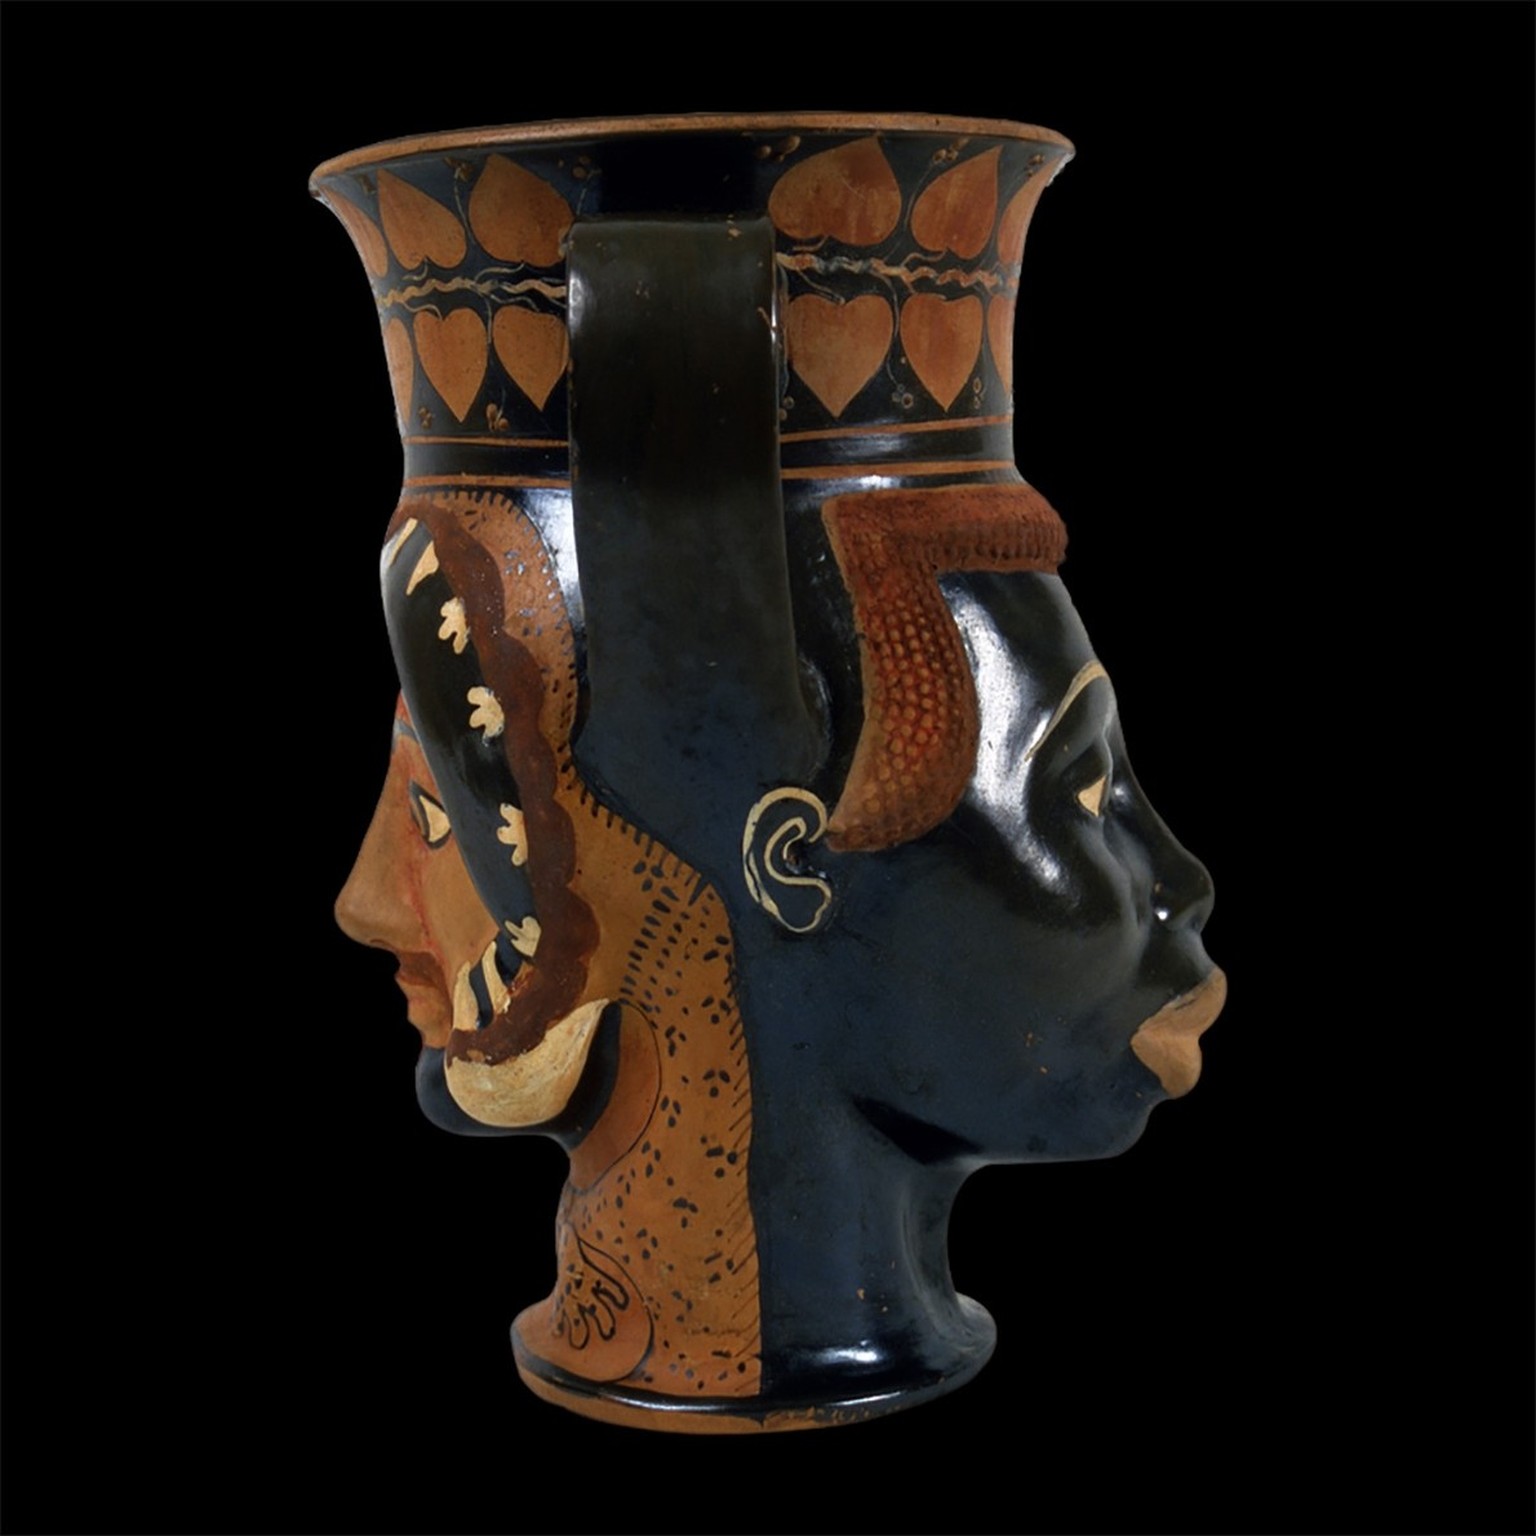 Vase en céramique, «canthare», avec la tête d’un Européen et d’un Africain, 480-470 av. J.-C.
https://www.museivaticani.va/content/museivaticani/en/collezioni/musei/museo-gregoriano-etrusco/sala-xix-- ...